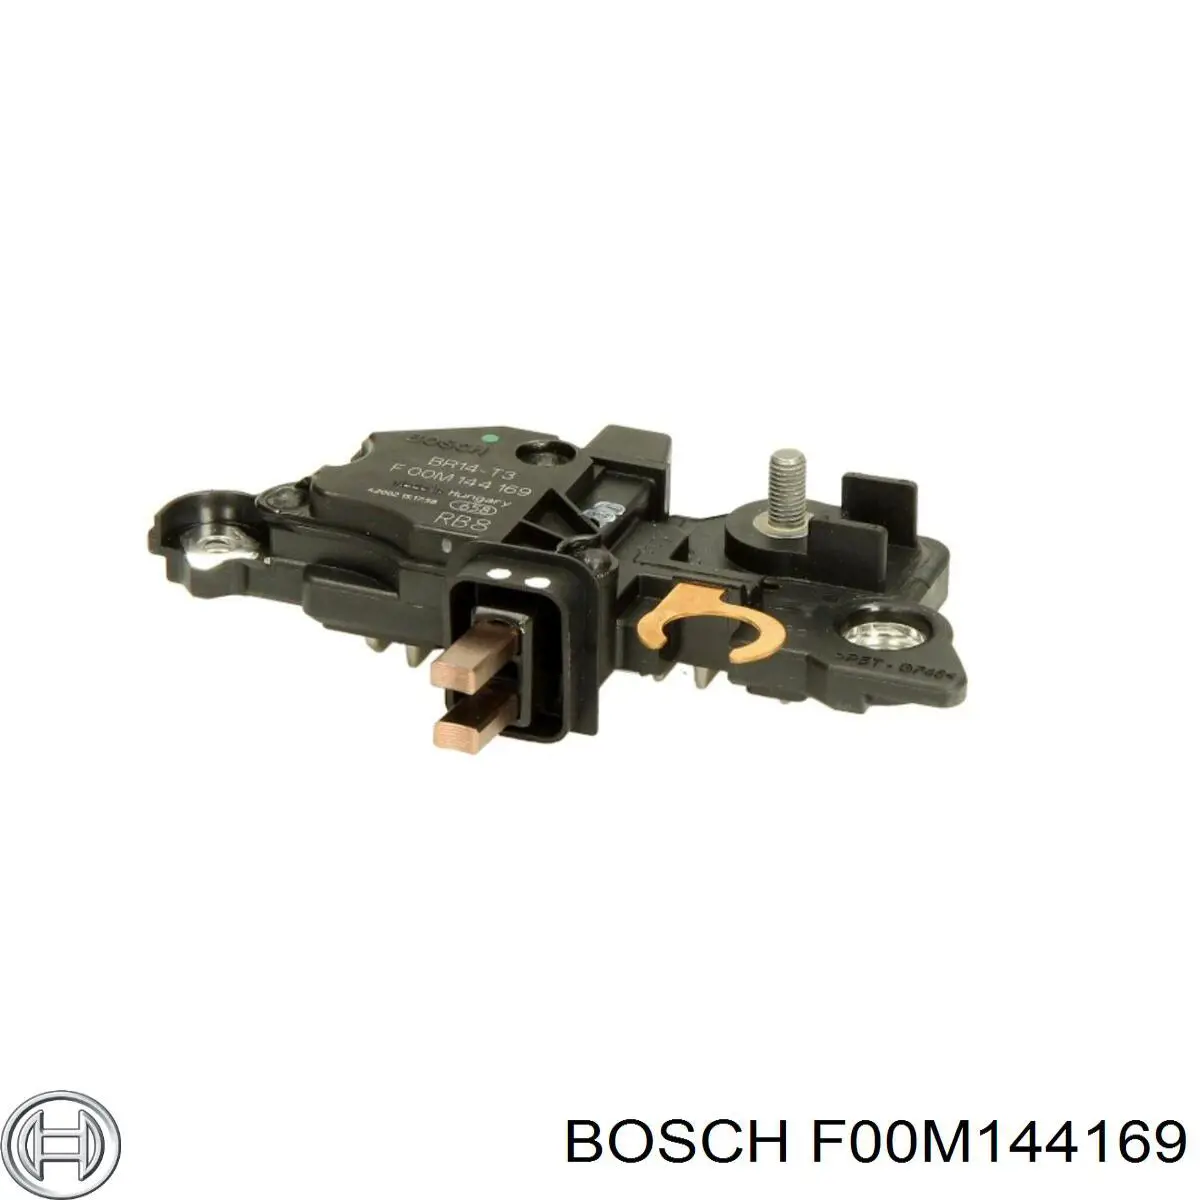 F 00M 144 169 Bosch relê-regulador do gerador (relê de carregamento)